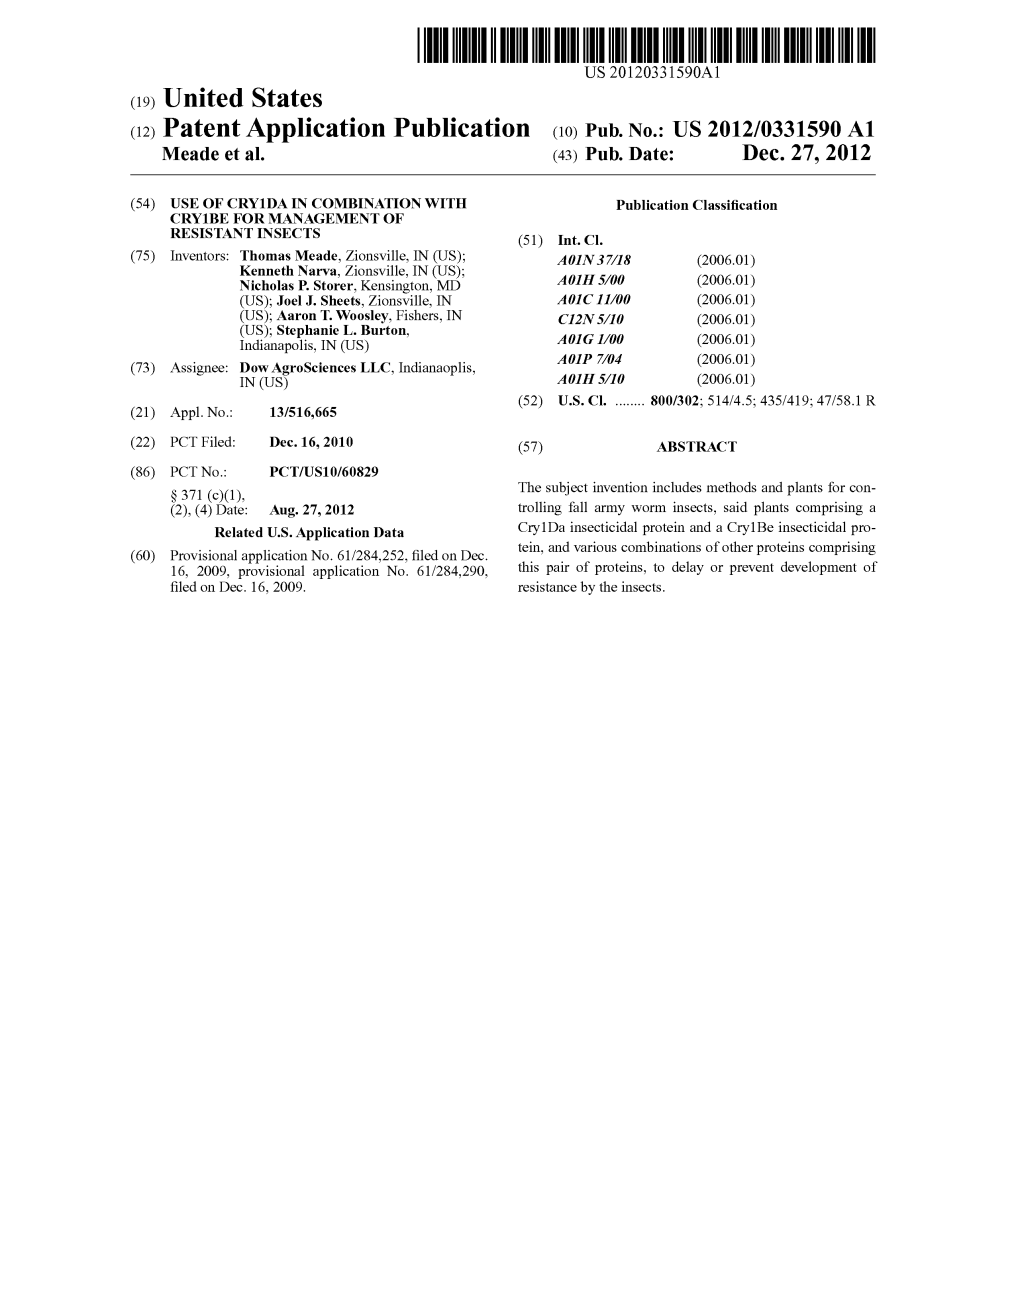 (12) Patent Application Publication (10) Pub. No.: US 2012/0331590 A1 Meade Et Al